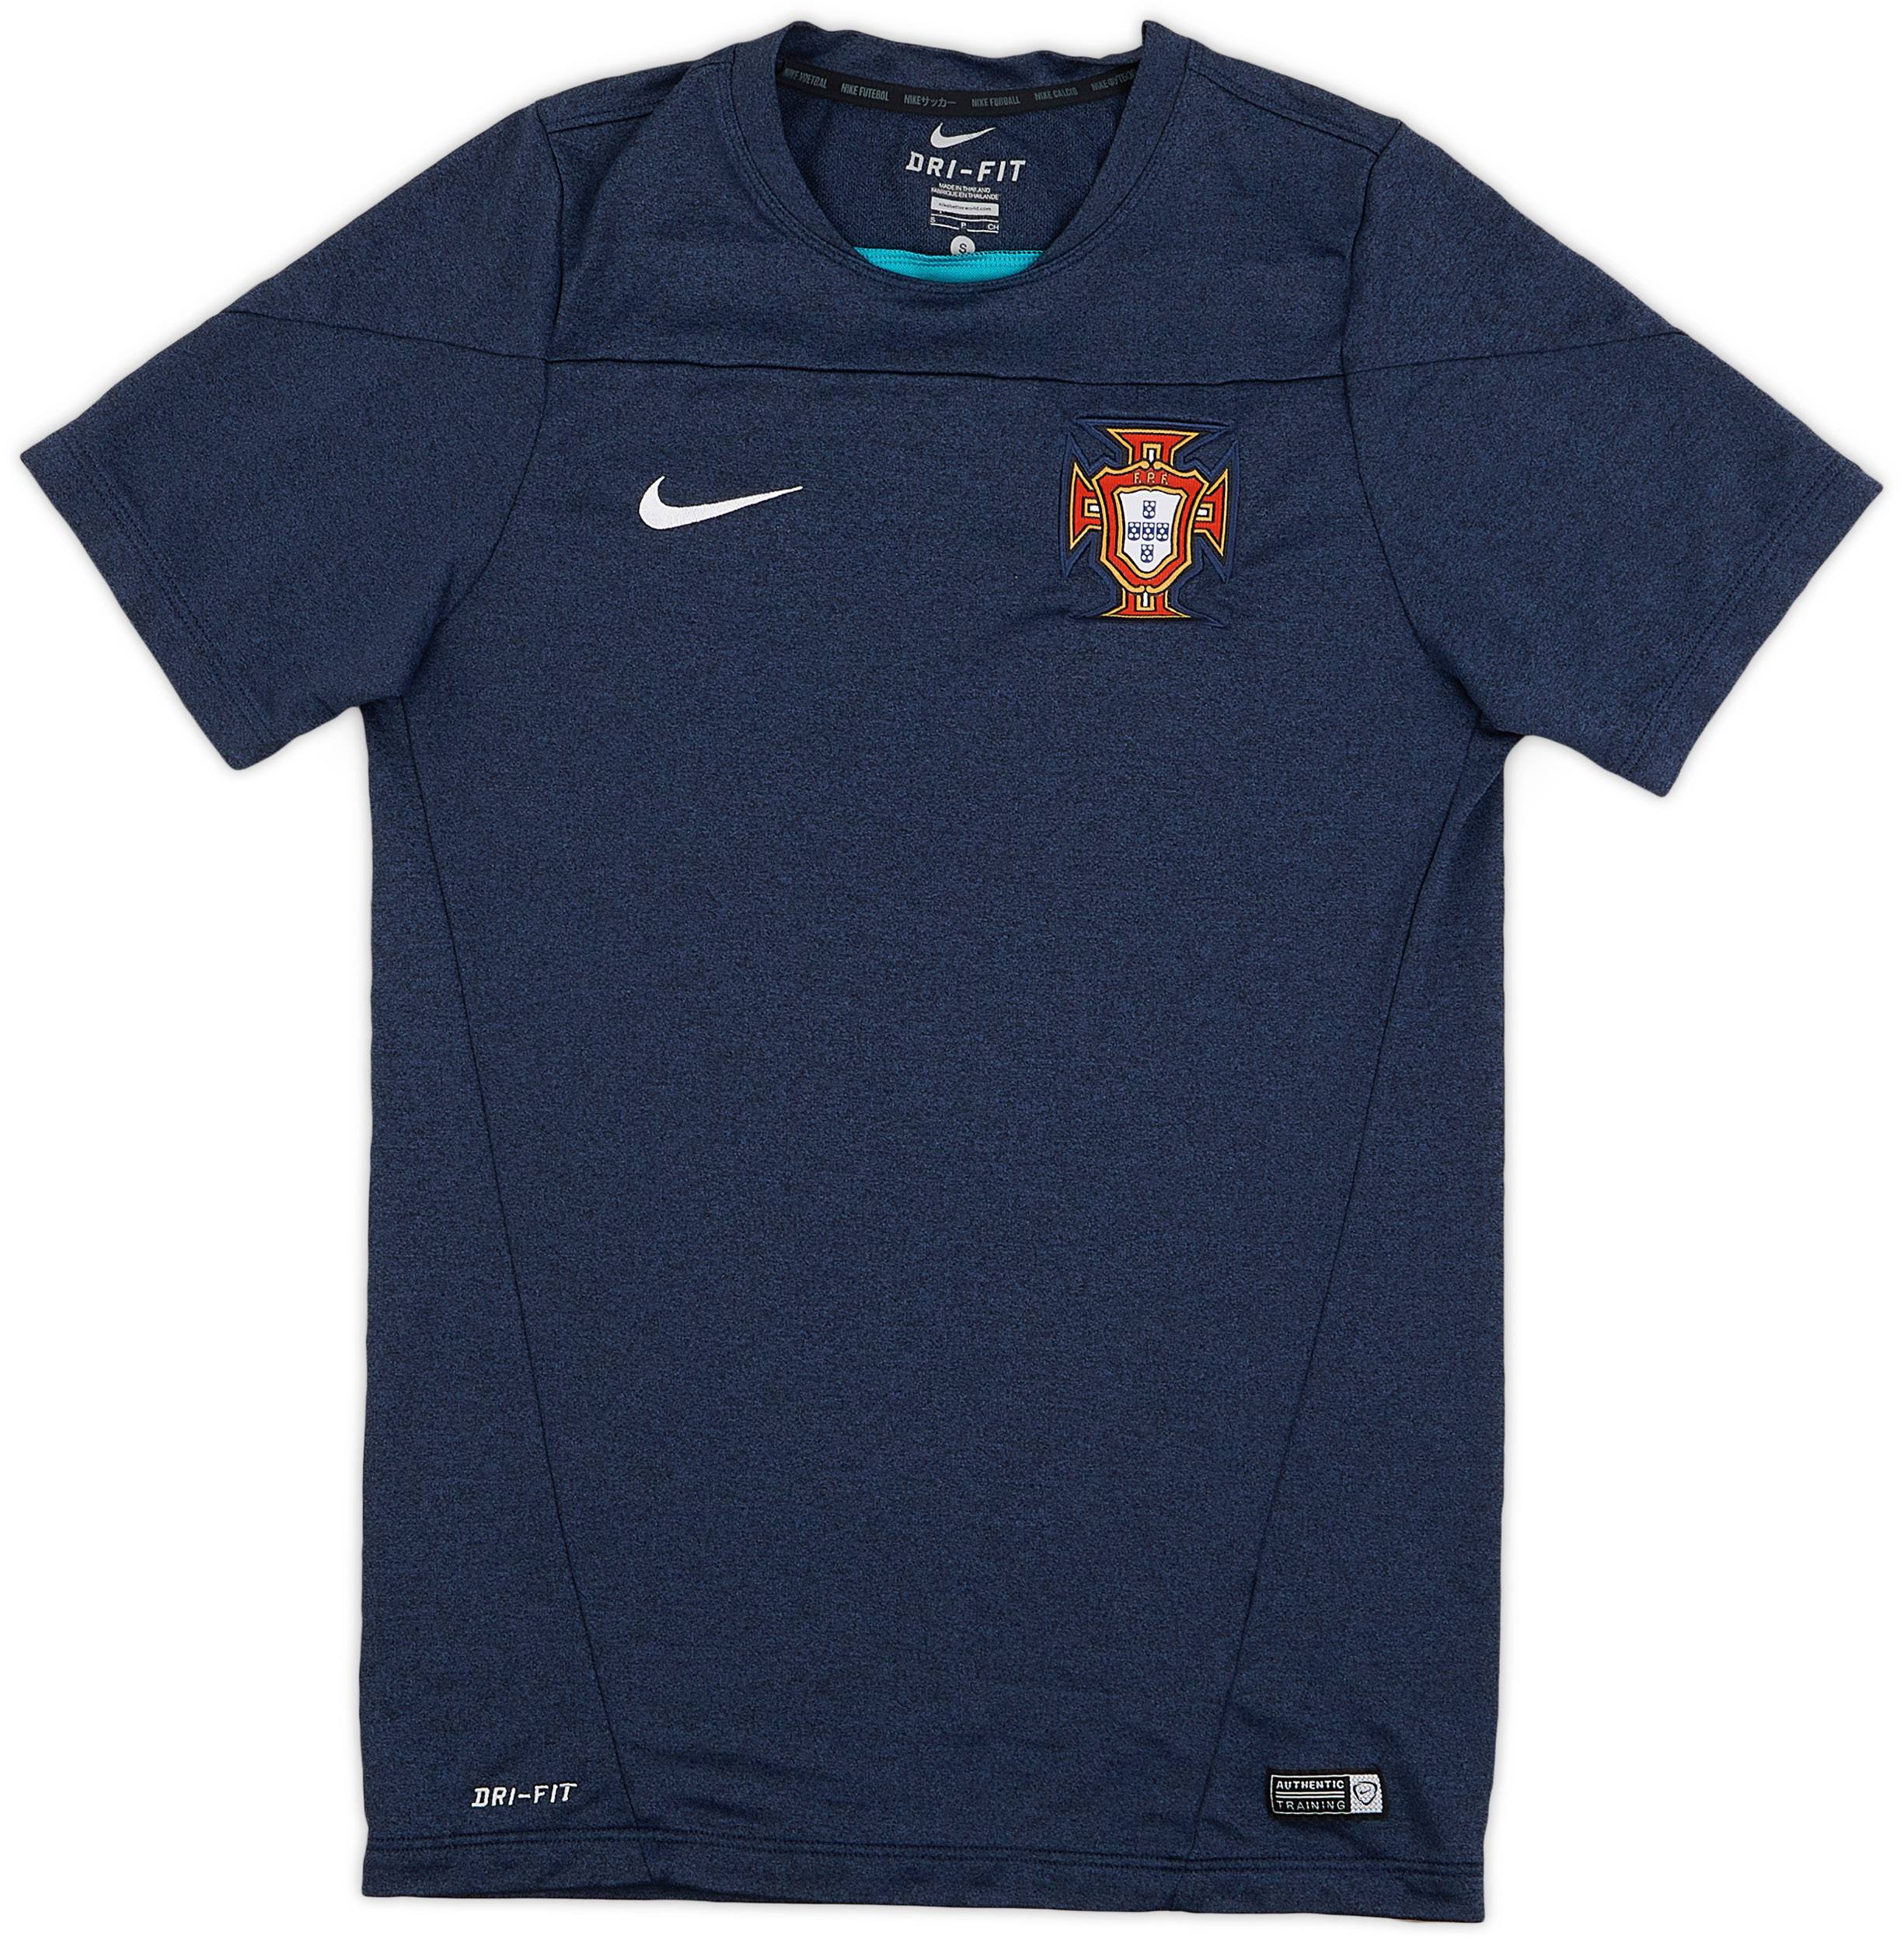 2014-15 Portugal Nike Training Shirt - 9/10 - (S)